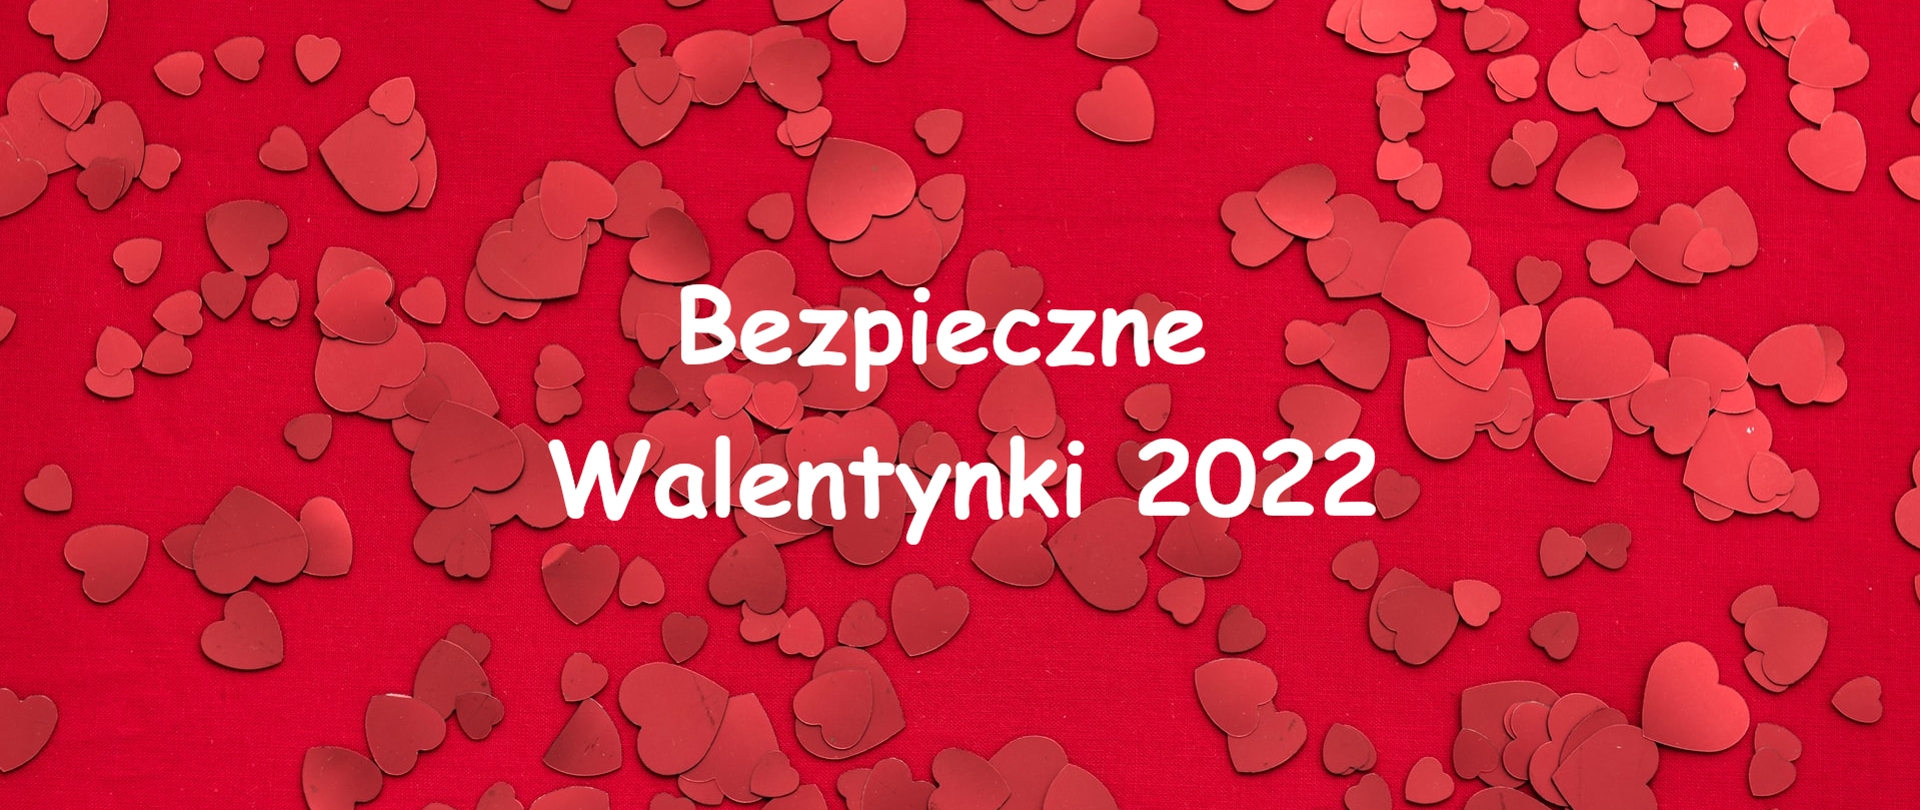 Bezpieczne Walentynki 2022